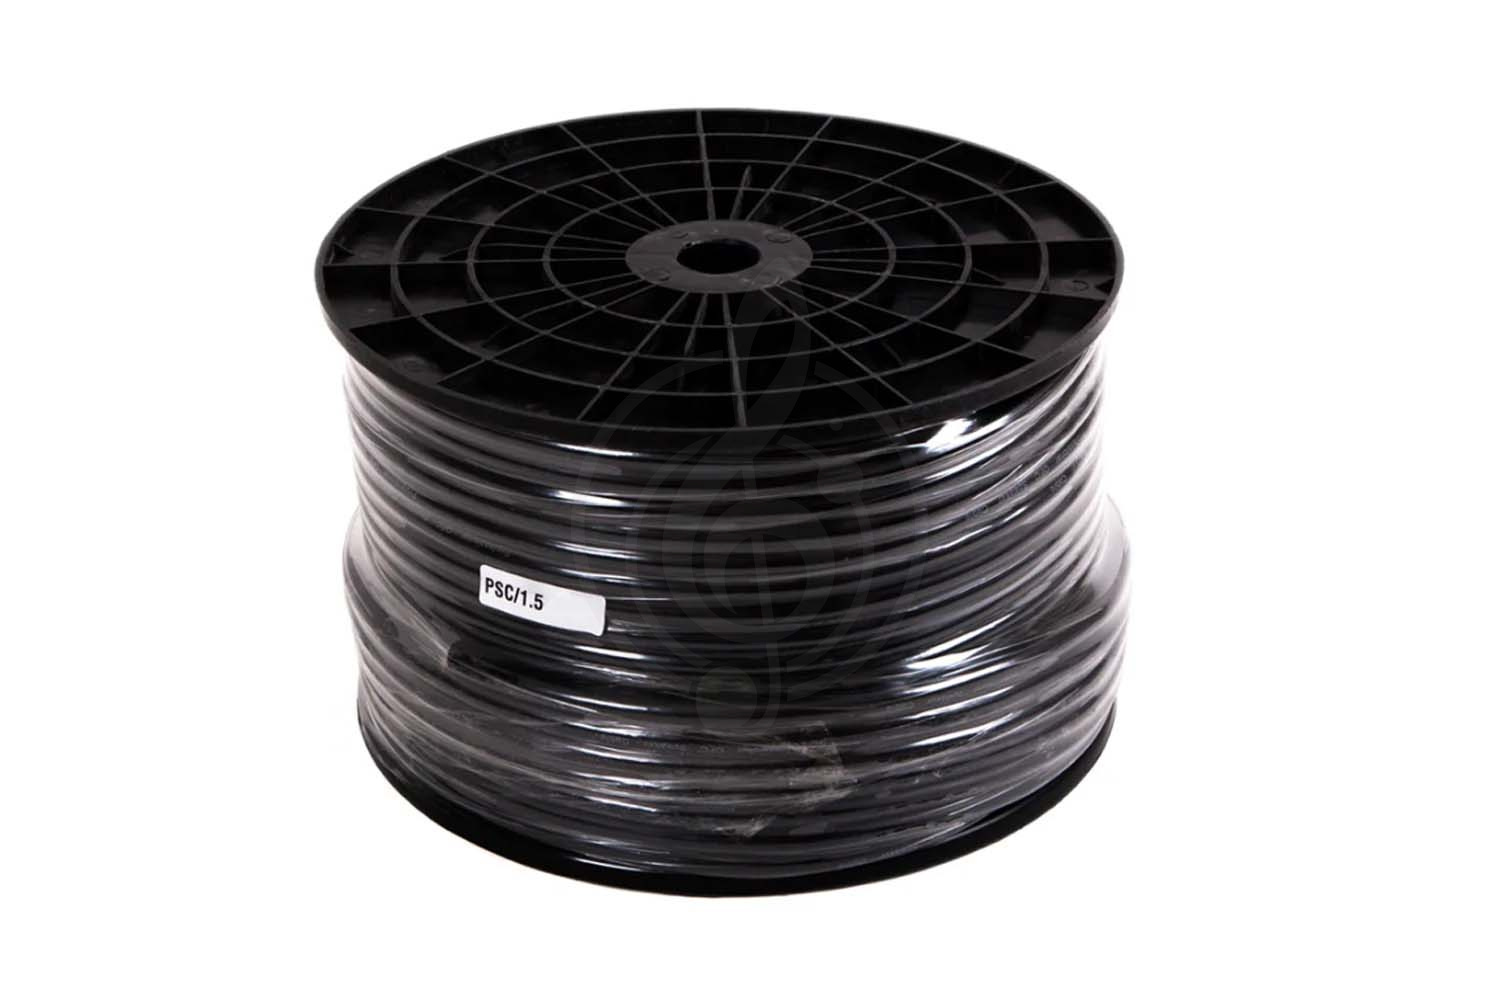 Акустический кабель Спикерный кабель (м) Force FORCE PSC/1,5 - кабель для акустических систем в бухтах, 2 x1,5 мм2, черного цвета PSC/1,5 - фото 2